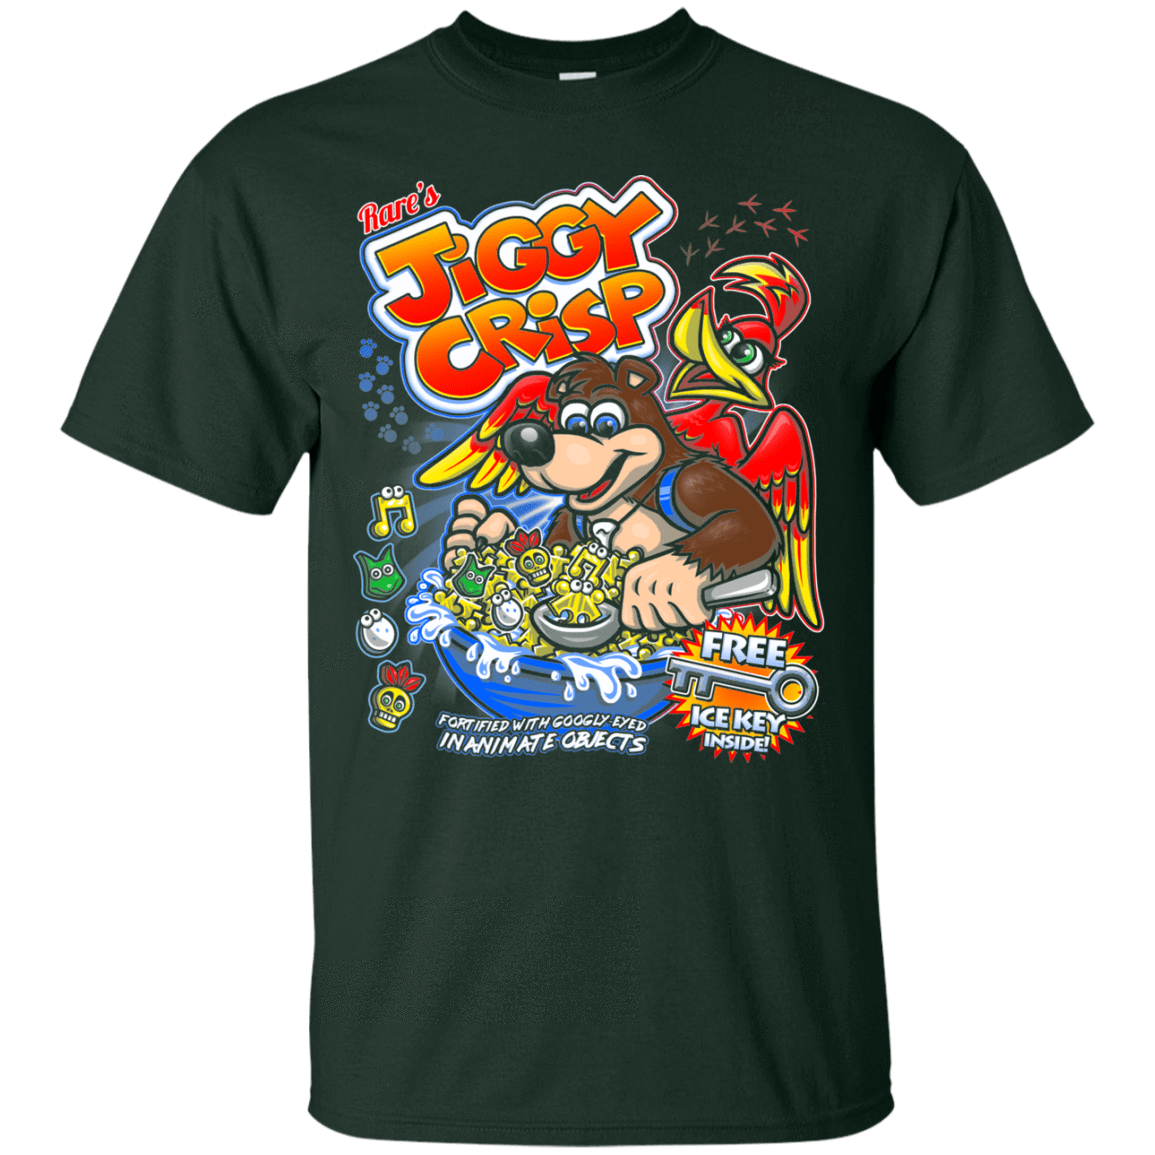 T-Shirts Forest / S Jiggy Crisp Cereal T-Shirt